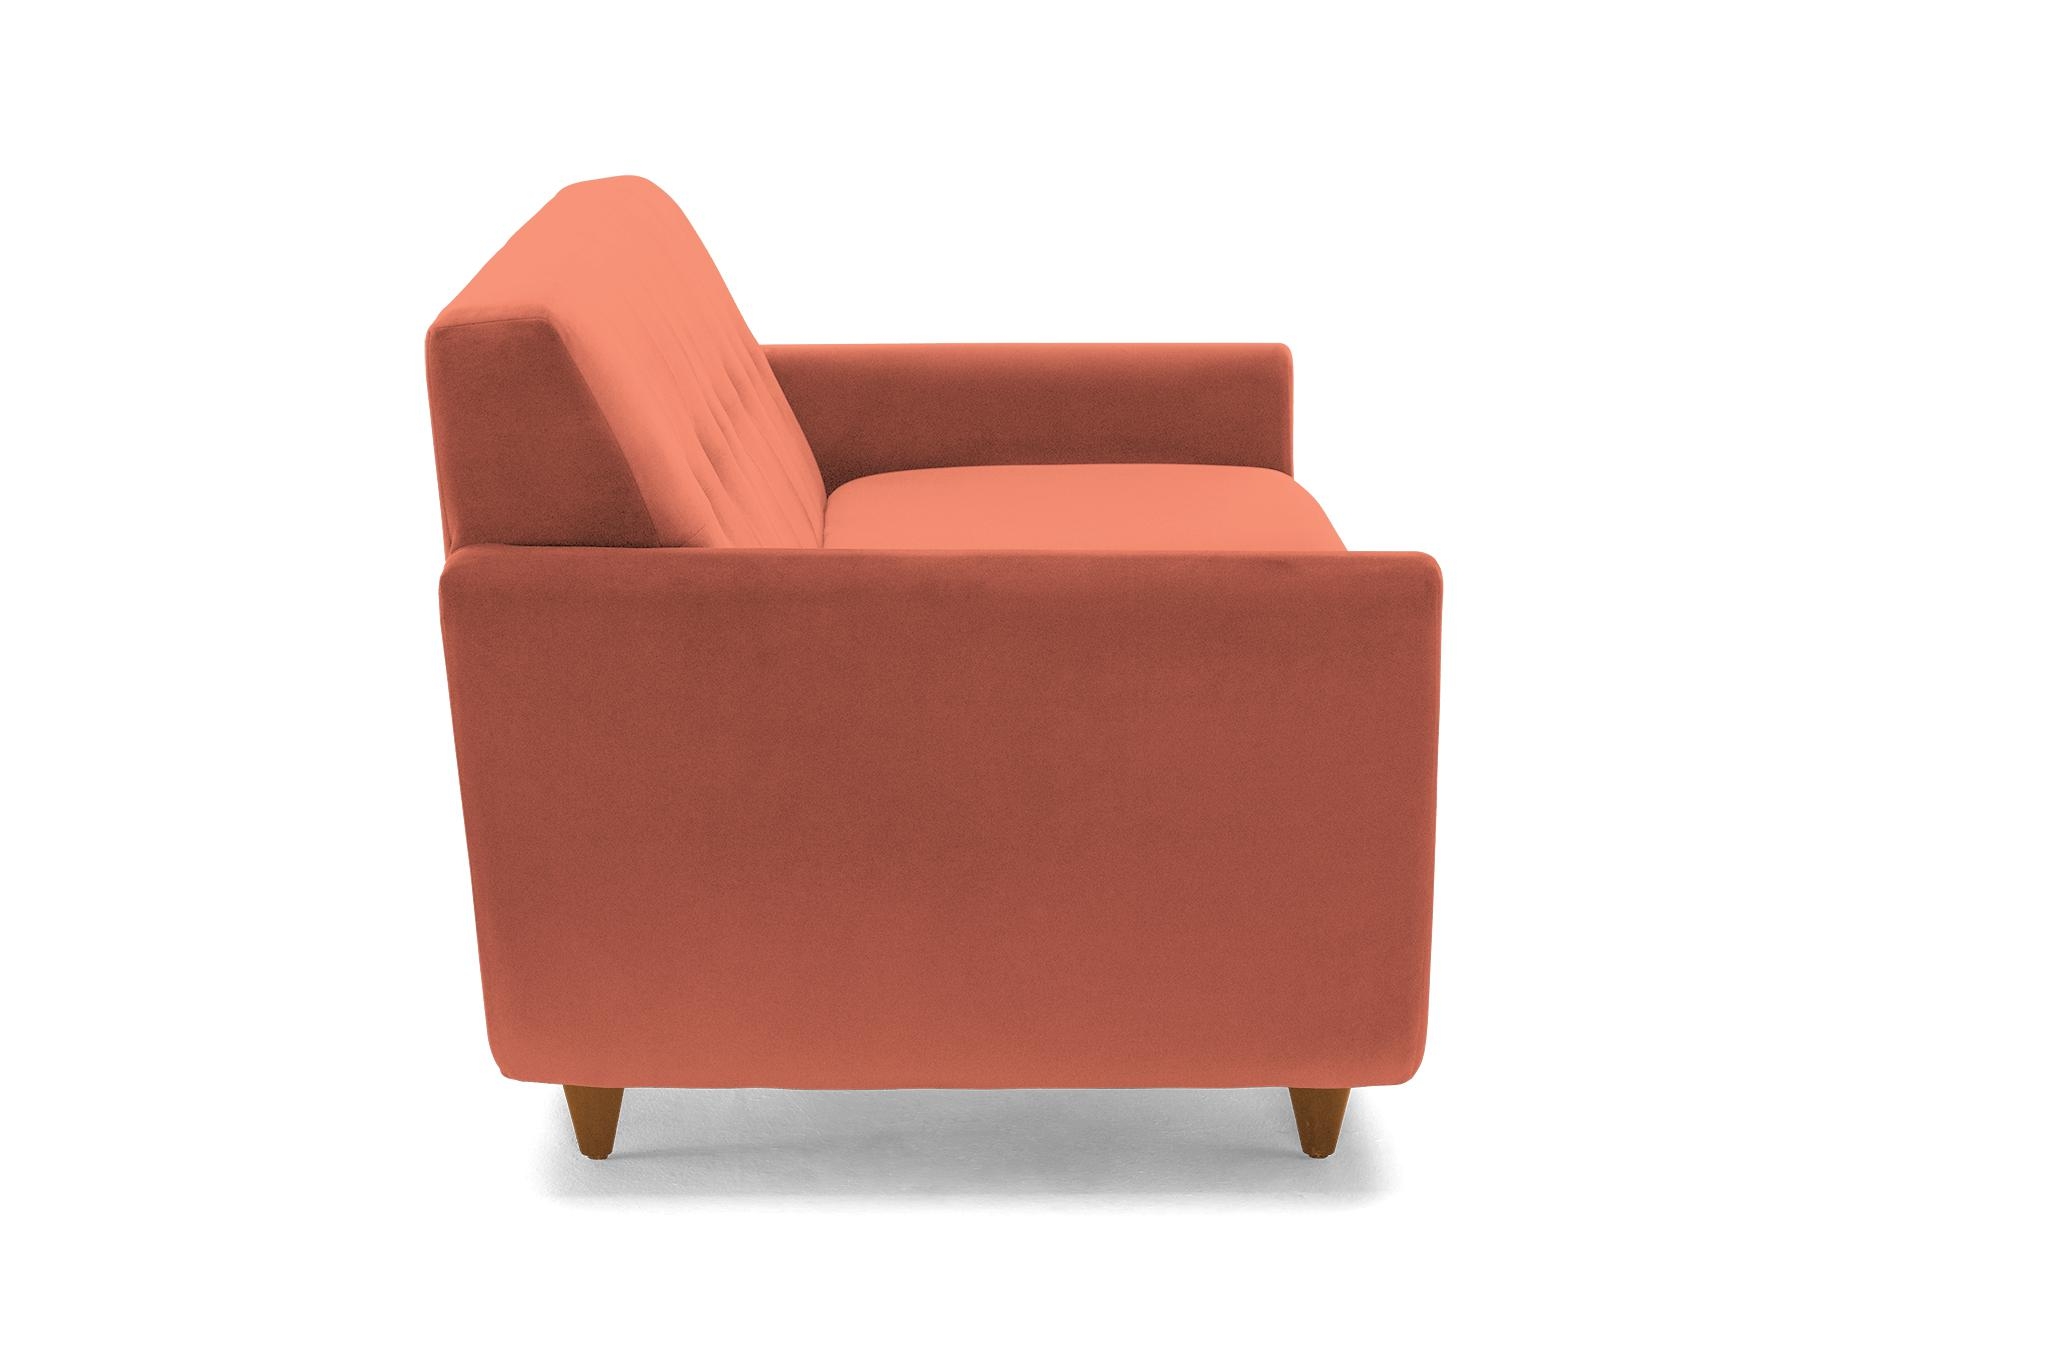 Orange Hughes Mid Century Modern Sofa with Storage - Key Largo Coral - Mocha - Image 2